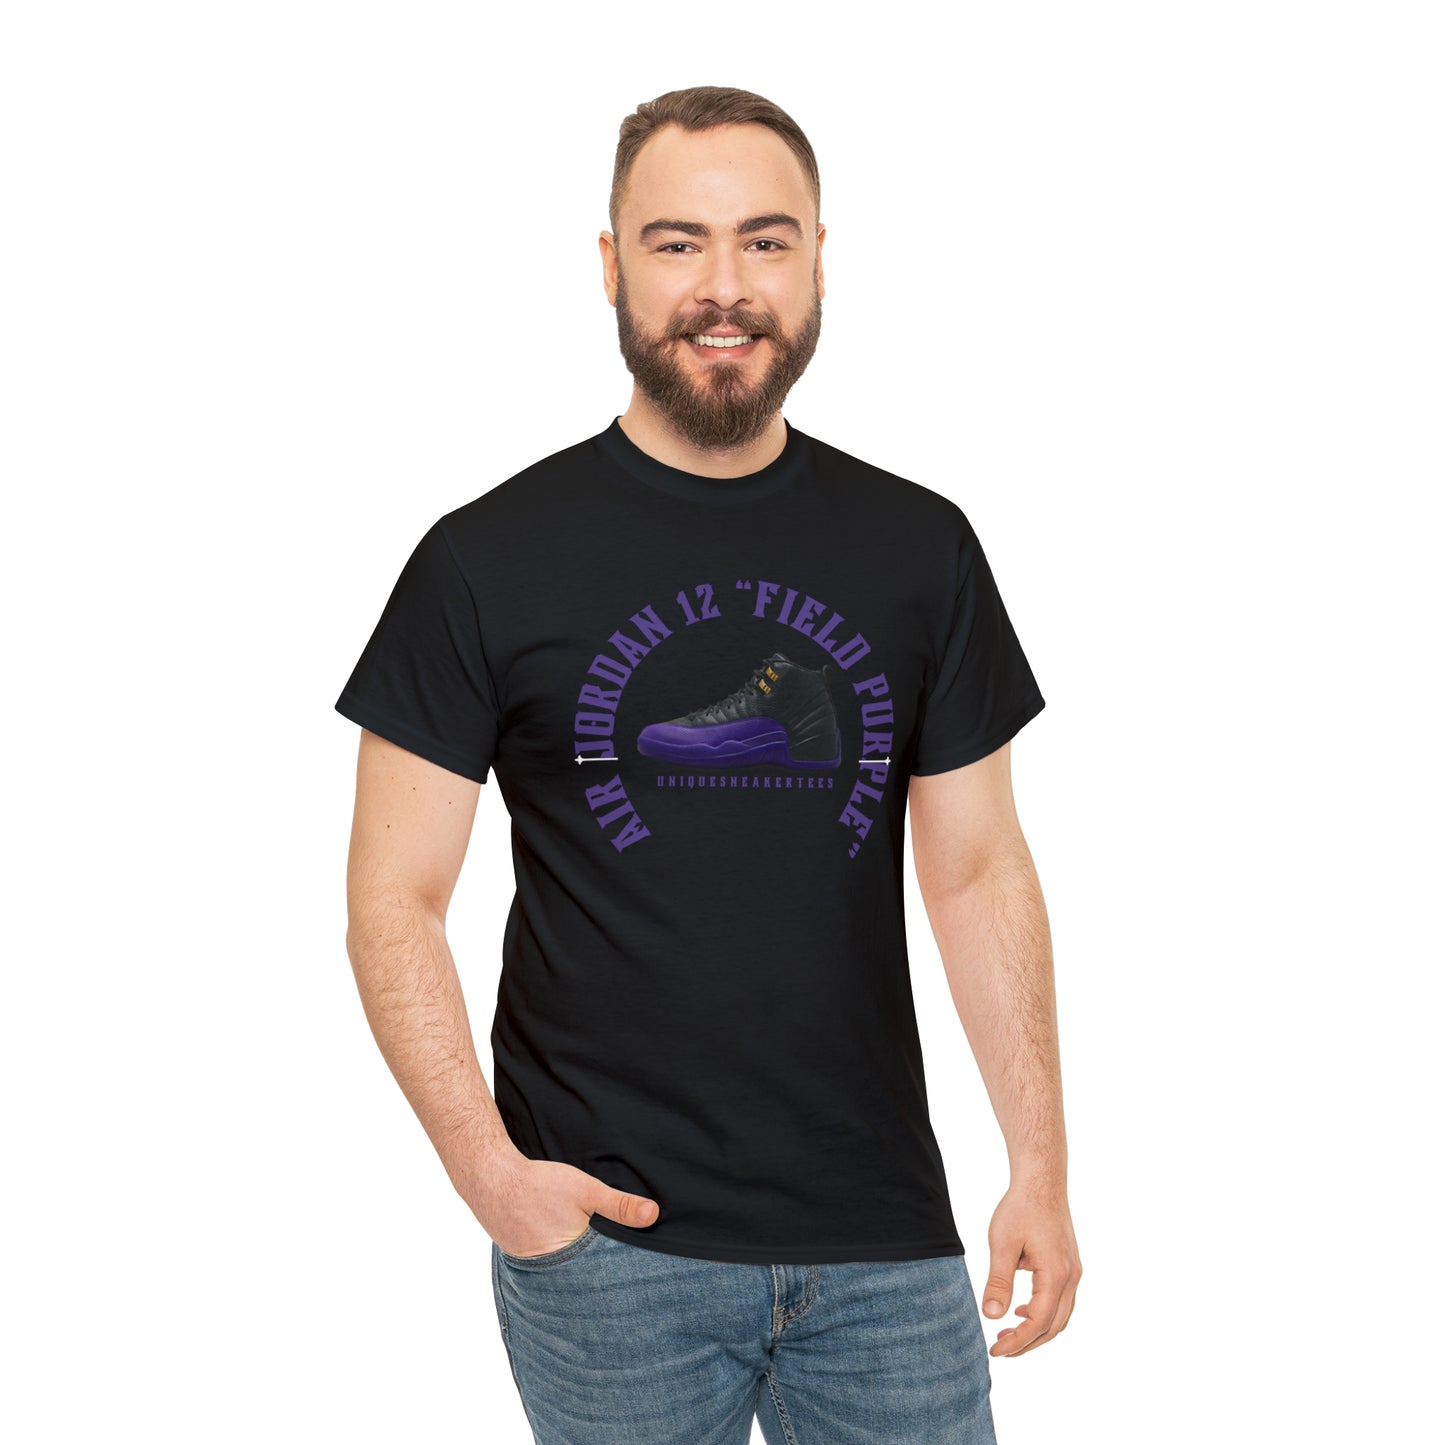 Air Jordan 12 “Field Purple” Tee